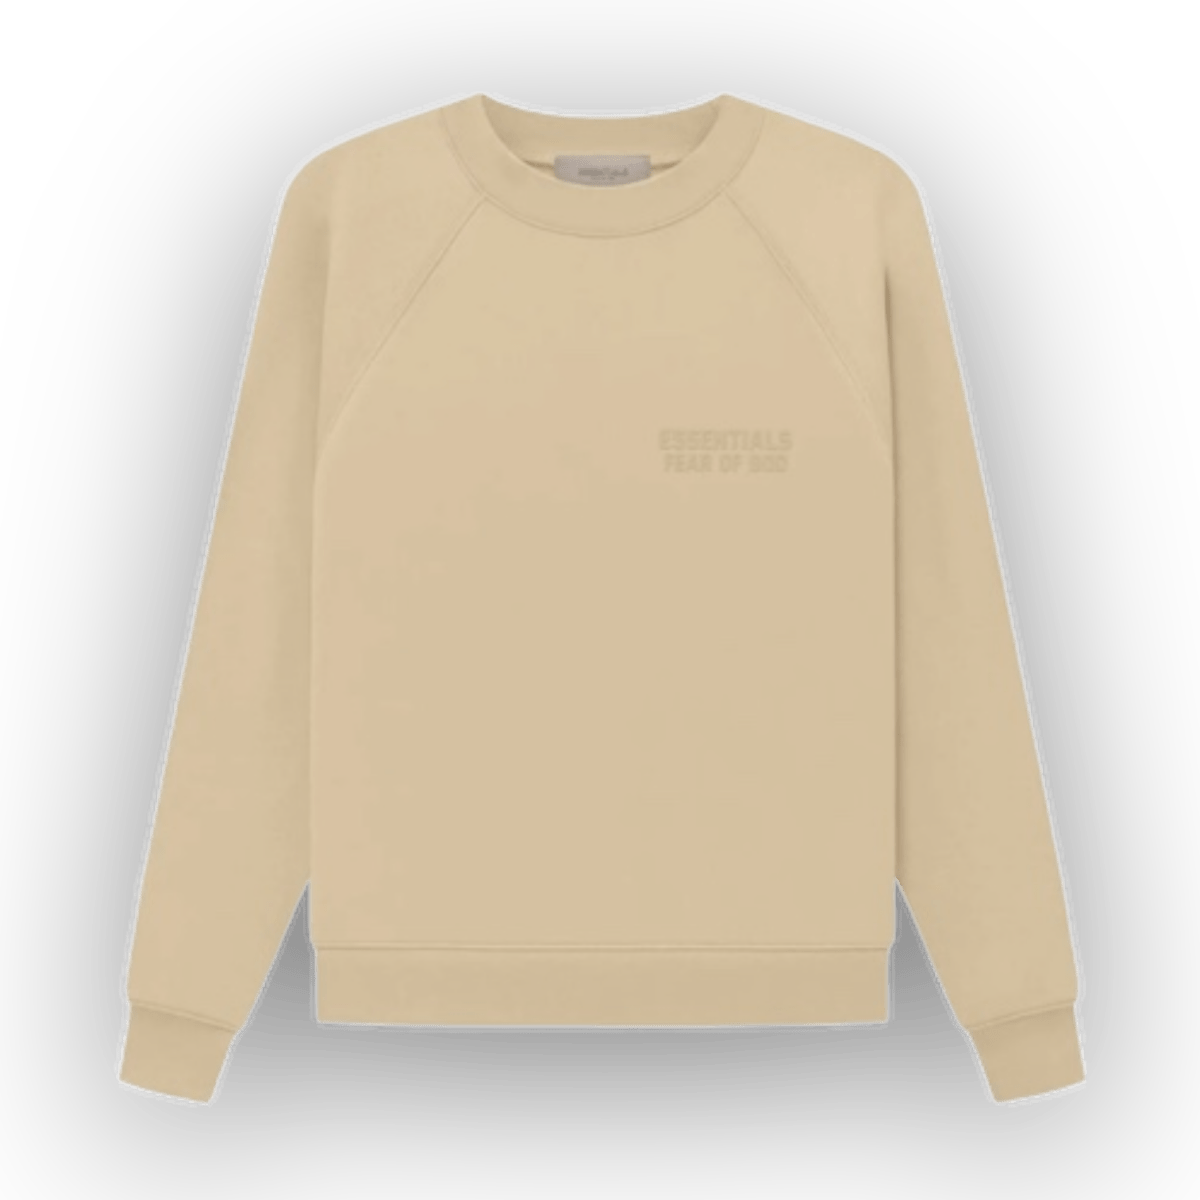 Essentials Fear of God Crew Sand Sweatshirt - Sweatshirt - Jawns on Fire Sneakers & Streetwear